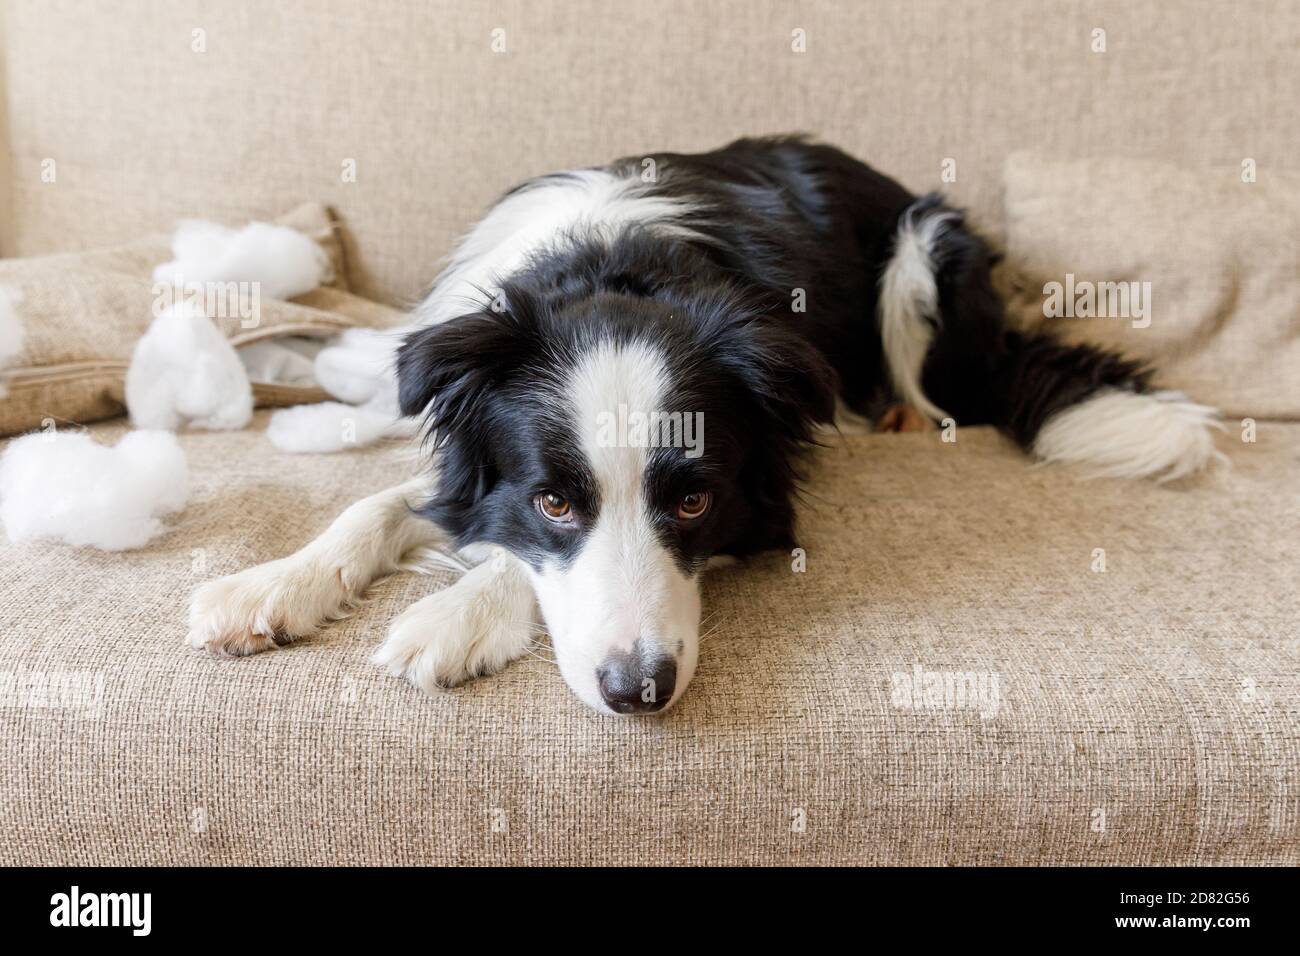 Frech verspielt Hund Grenze Collie nach Unfug beißen Kissen liegen auf  Couch zu Hause. Schuldig Hund und zerstört Wohnzimmer. Schaden chaotisch  Haus und Welpen mit lustigen Guilty Look Stockfotografie - Alamy